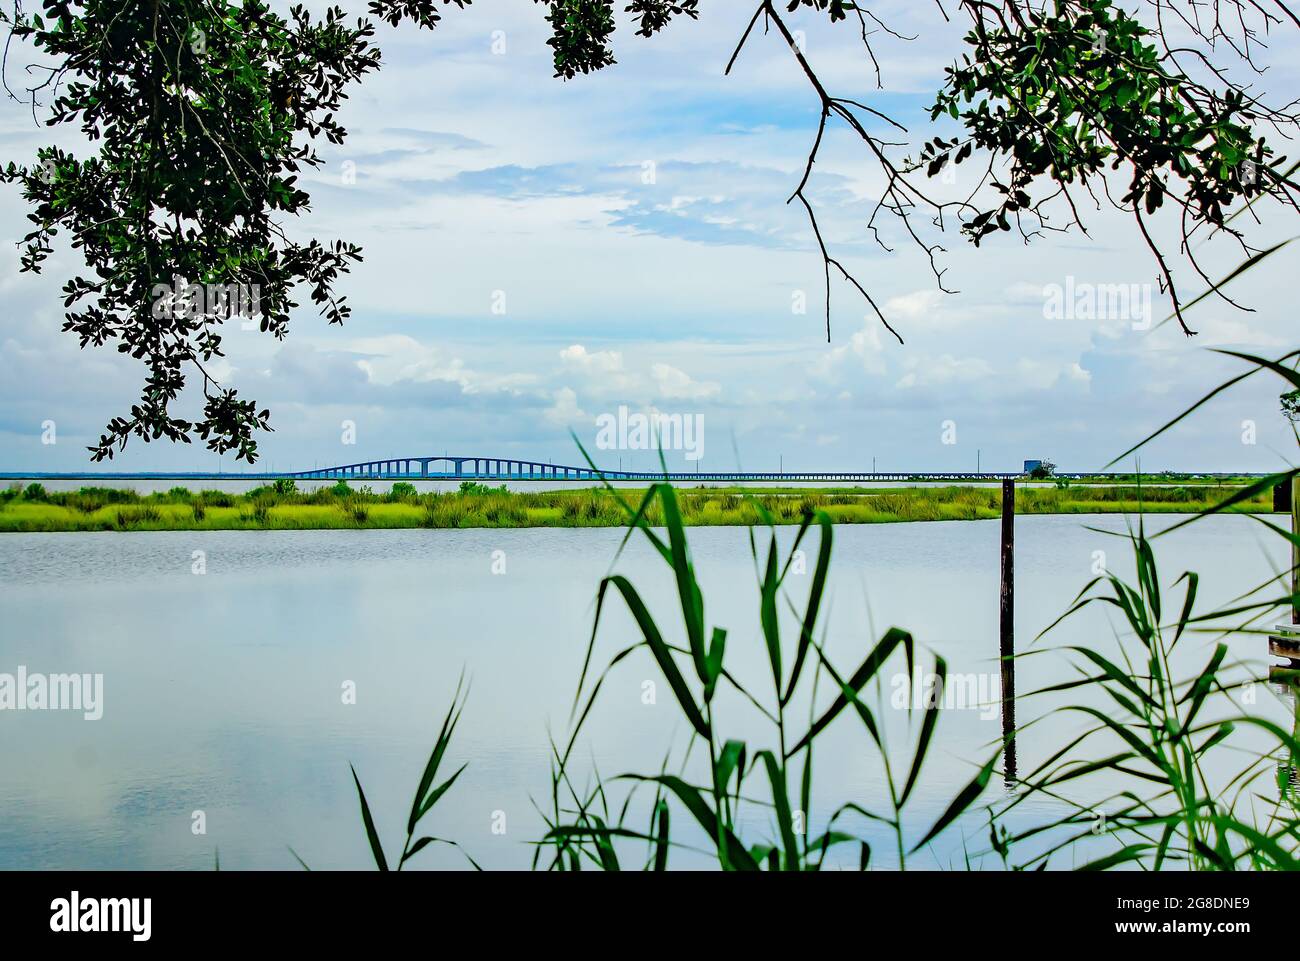 Le pont Dauphin Island, anciennement le pont Gordon Persons, est photographié à partir du parc Blue Heron, le 7 juillet 2021, à Dauphin Island, en Alabama. Banque D'Images